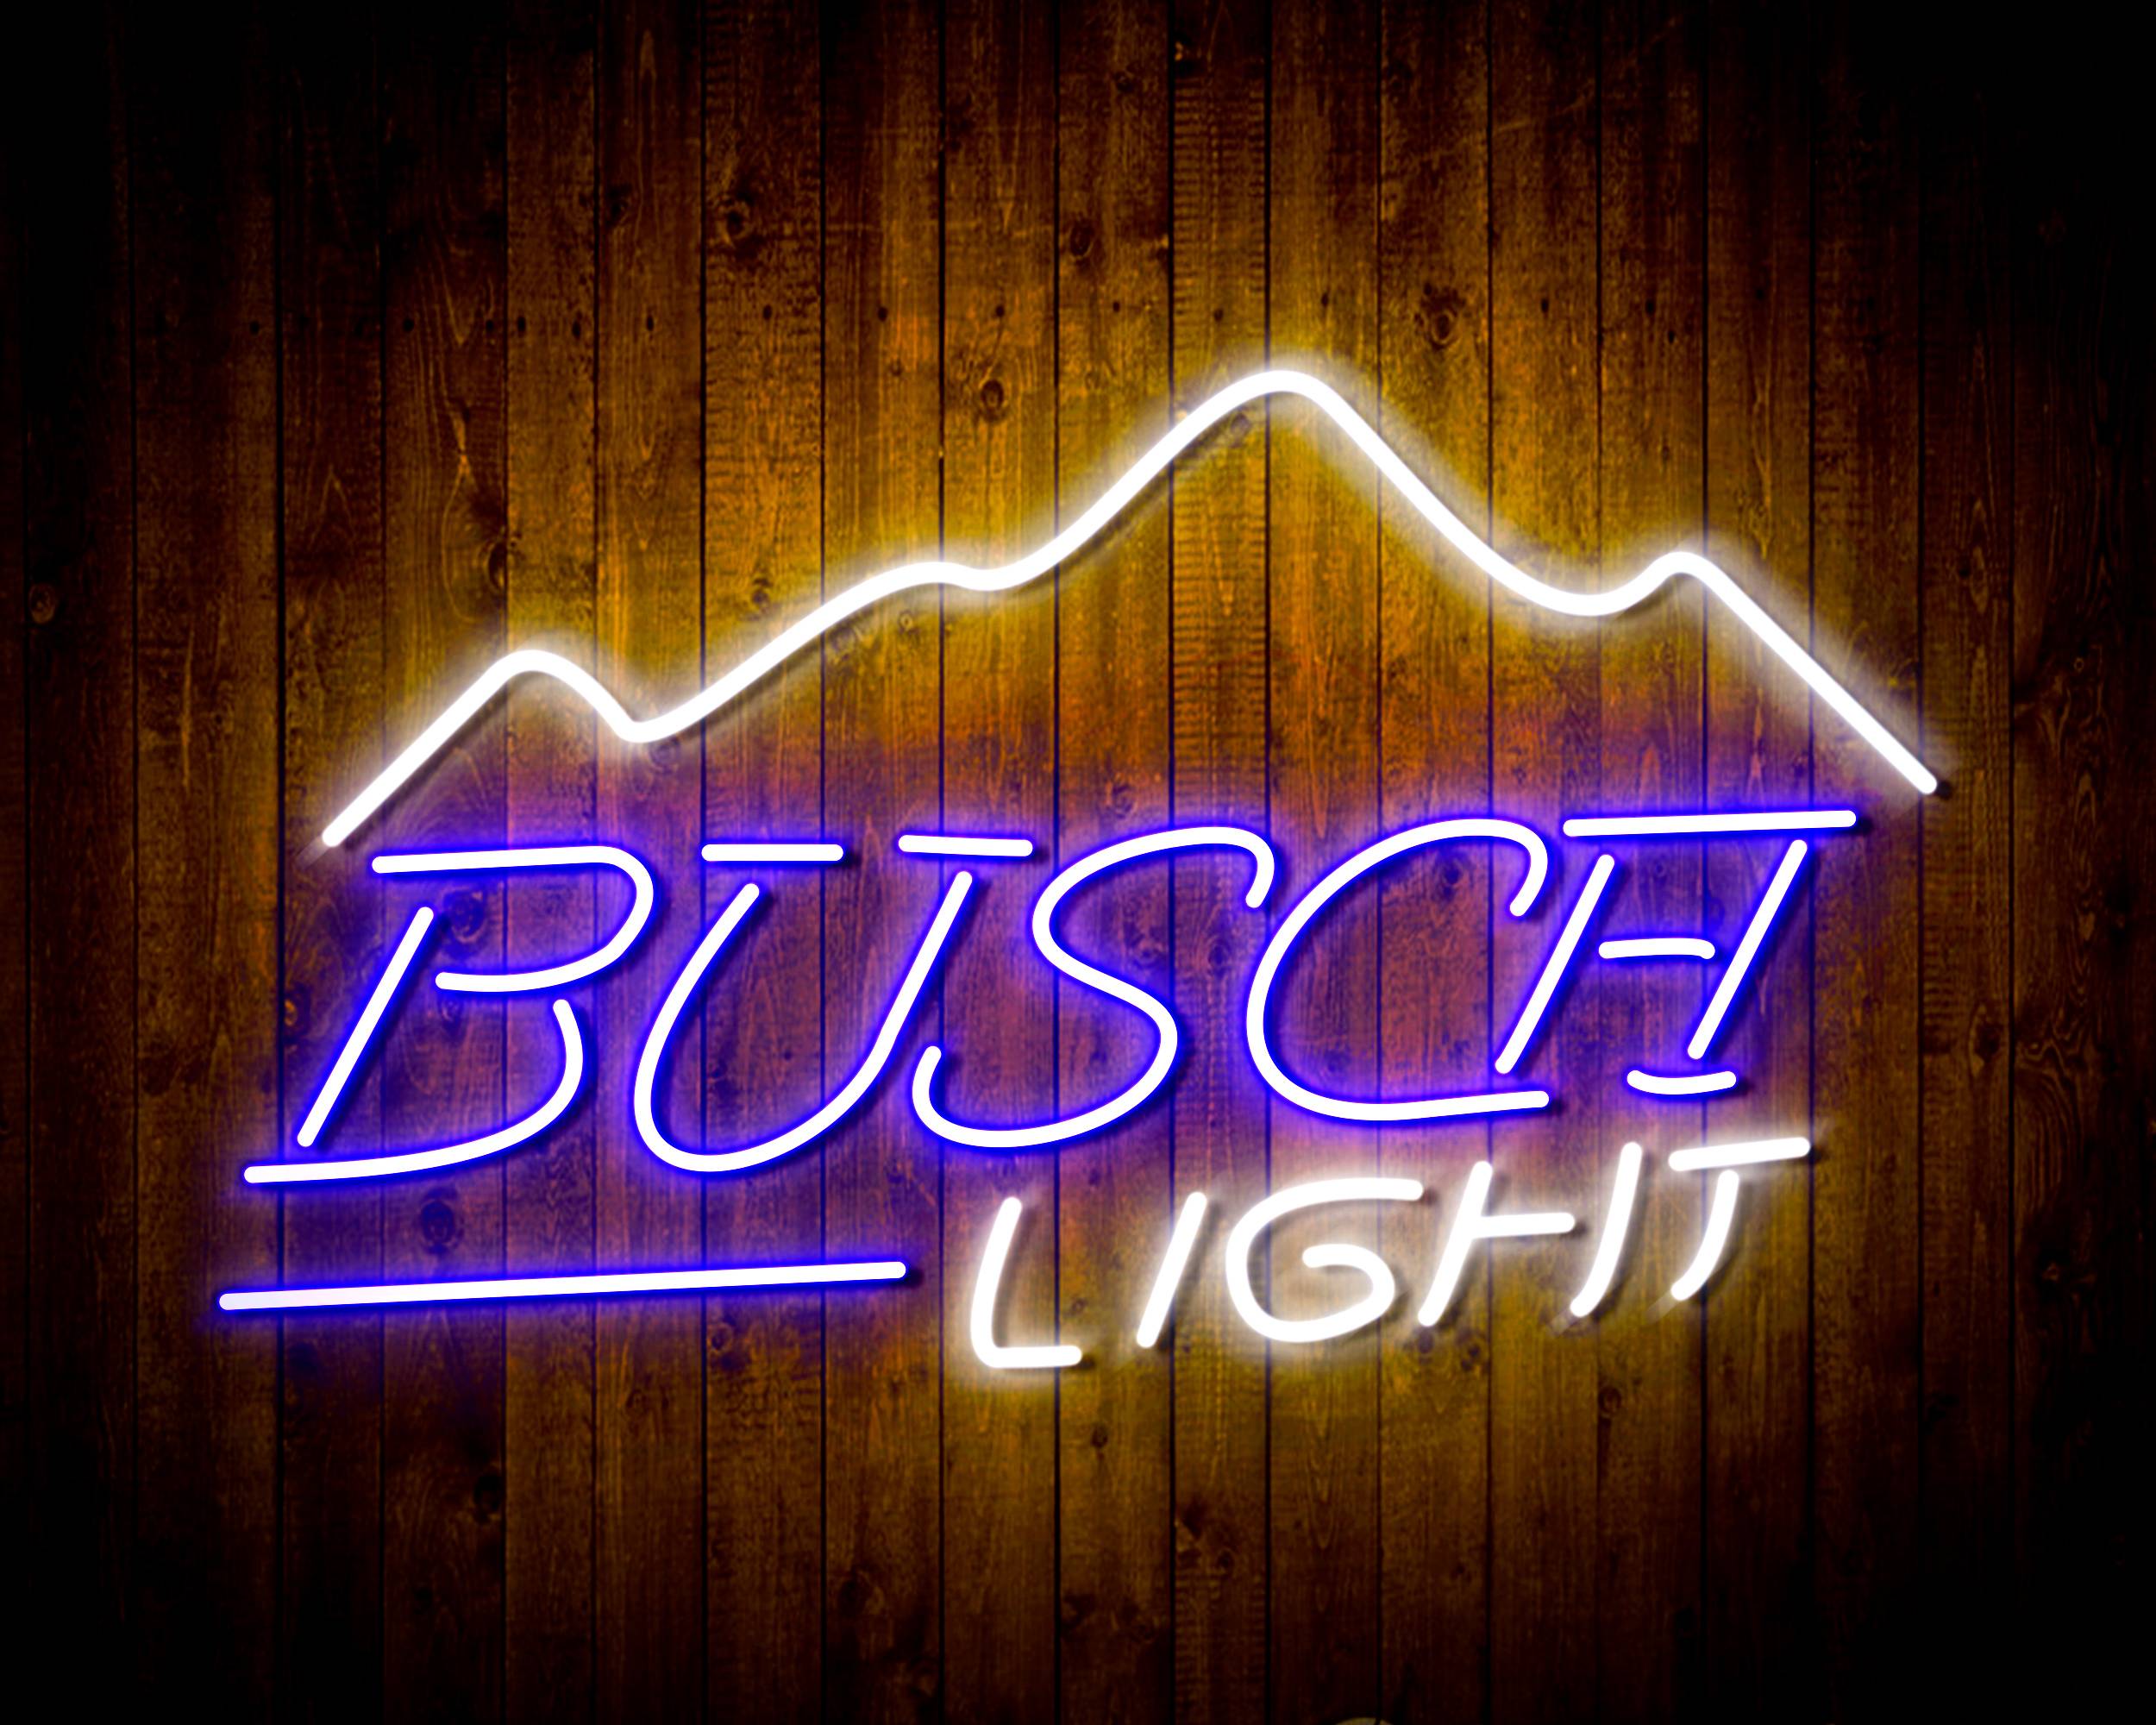 Busch Light Handmade LED Neon Light Sign